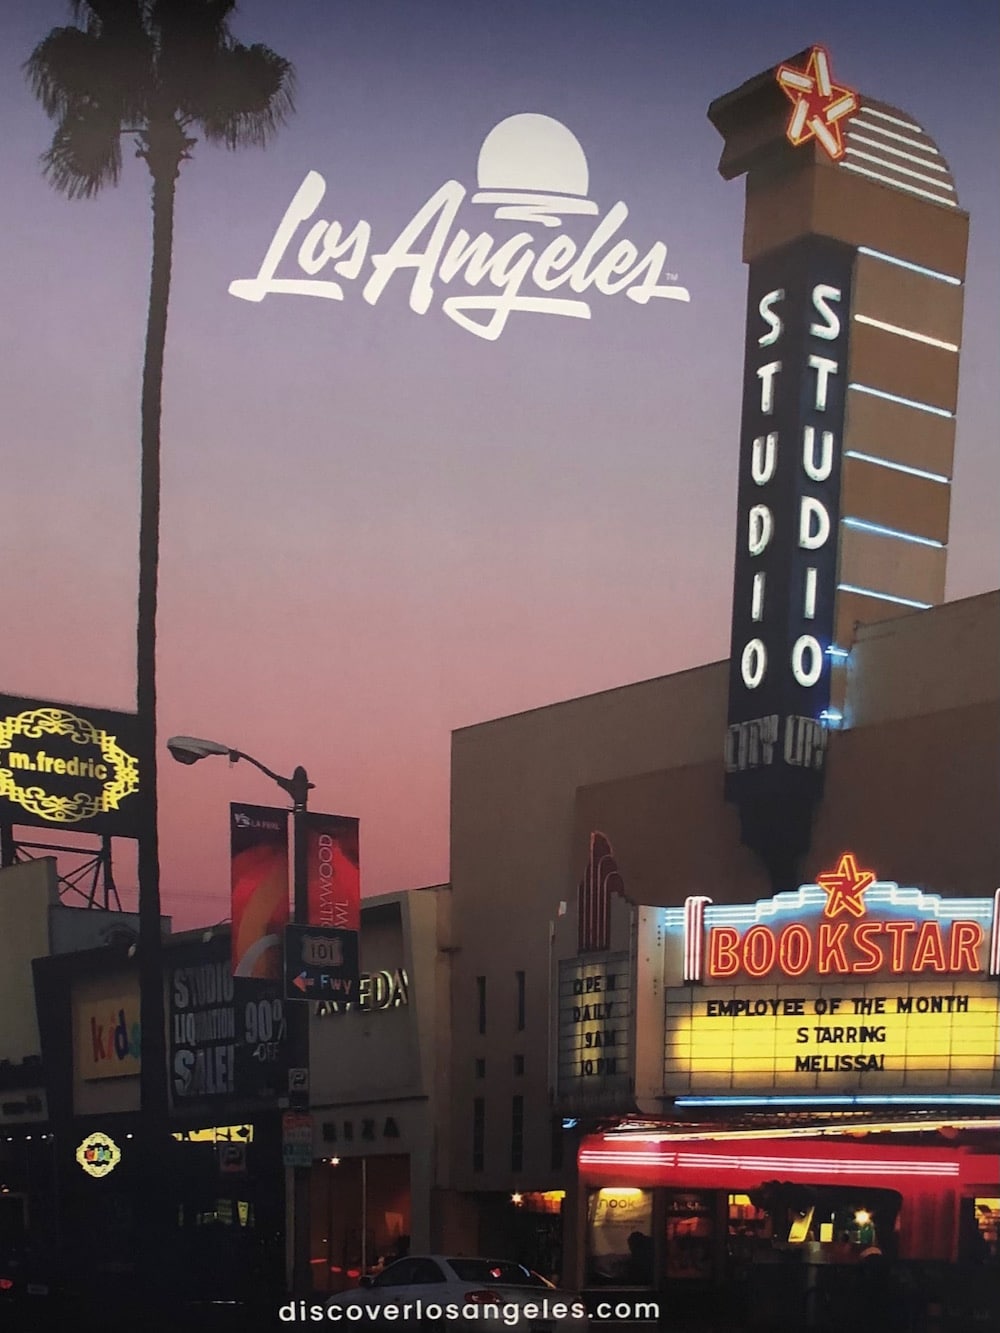 Neues Logo für Los Angeles von Shepard Fairey und House Industries: Vor dem Kino